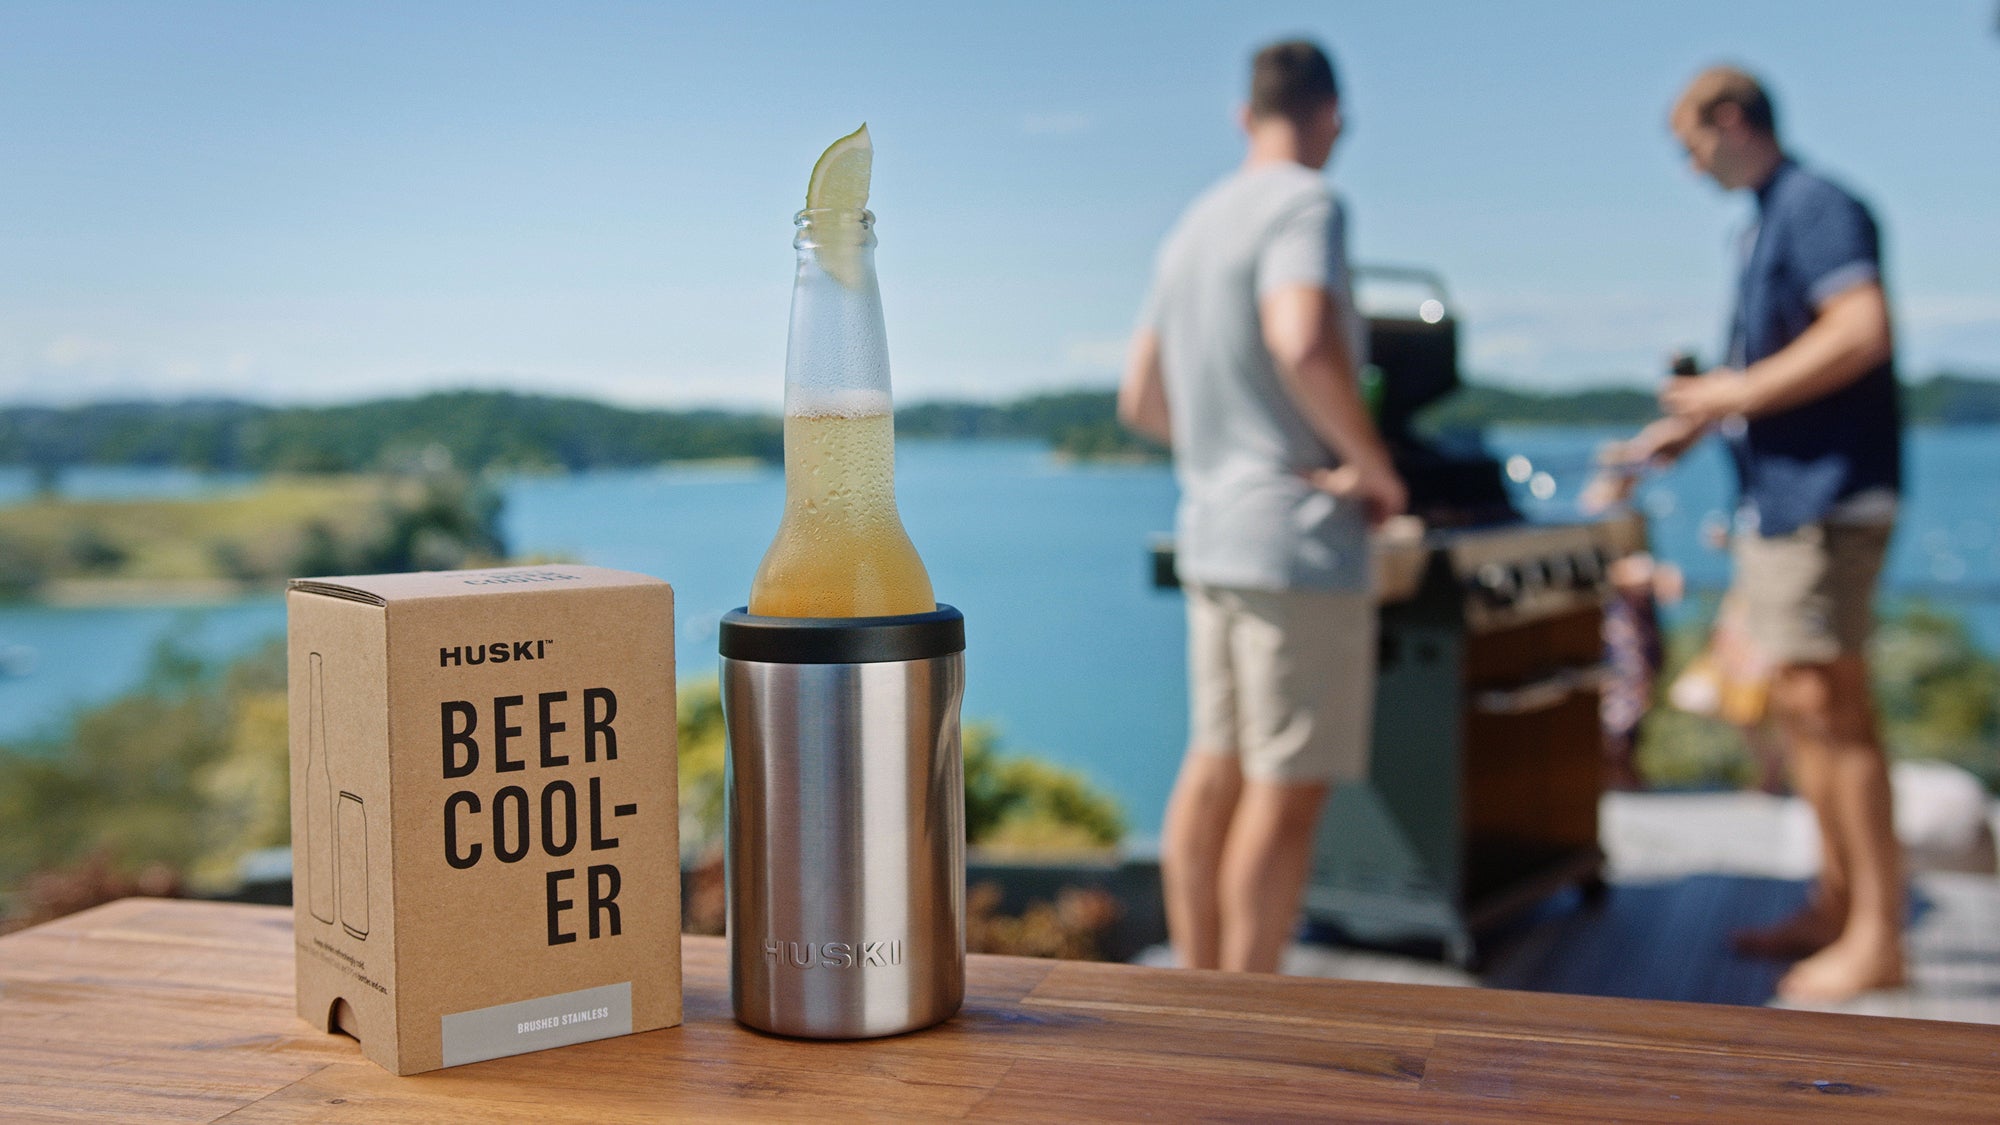 Load video: Huski beer cooler launch video